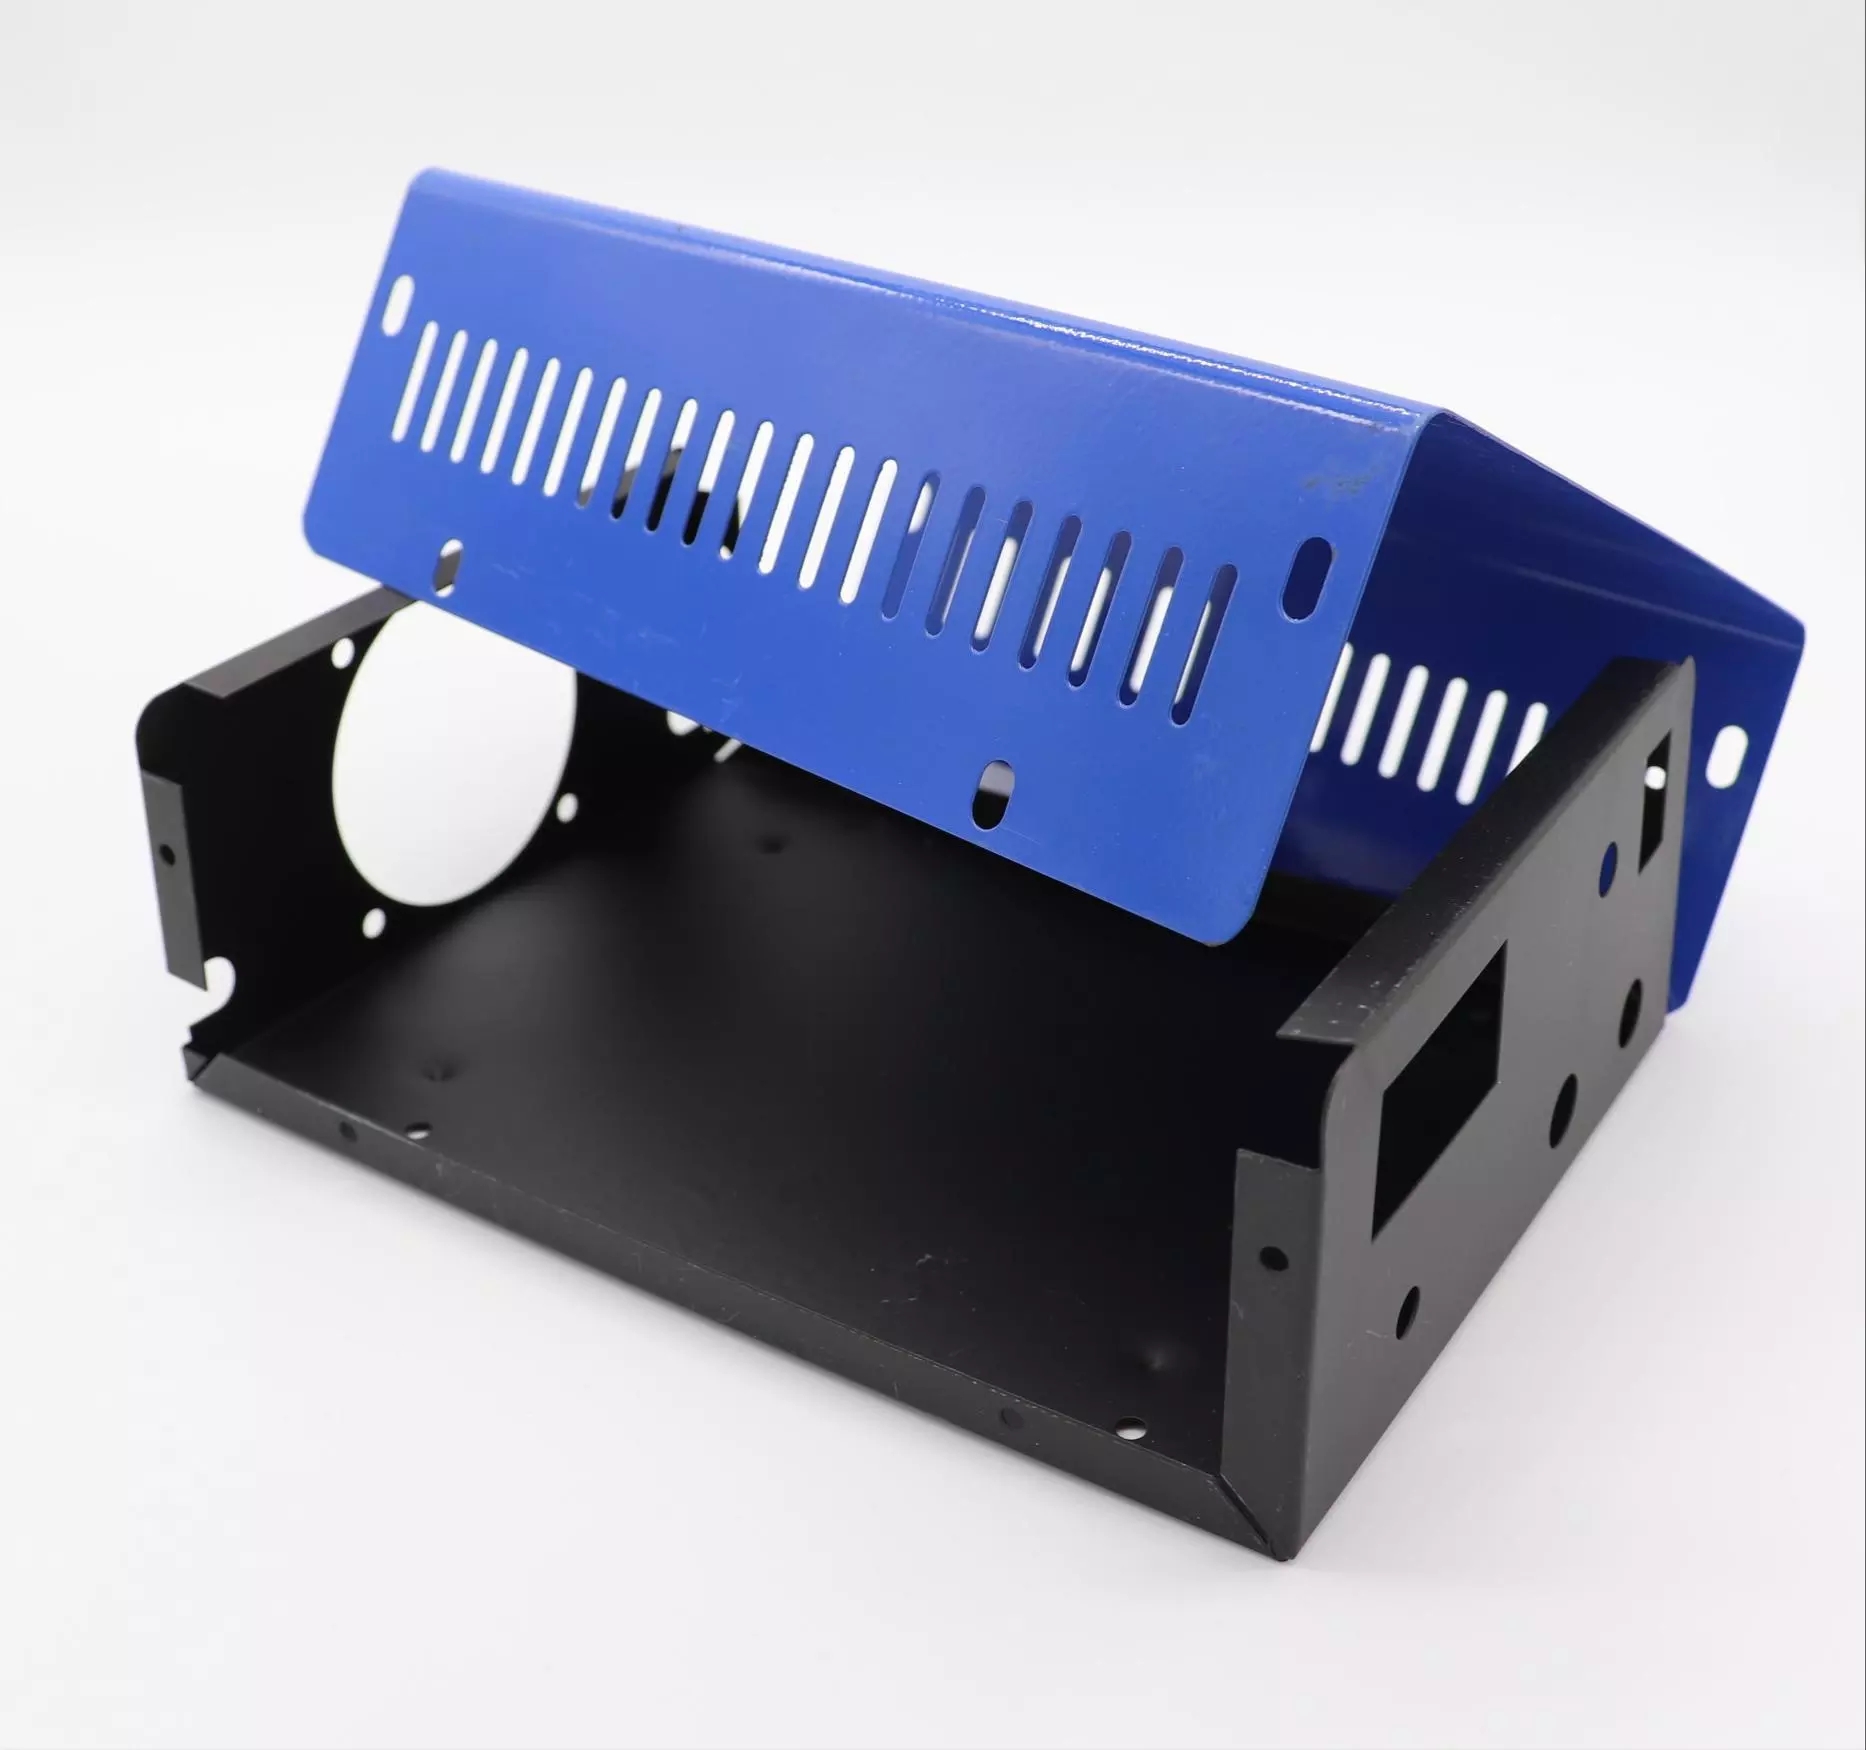 صندوق ضميمة توزيع التحكم الكهربائي من الفولاذ المقاوم للصدأ المخصص